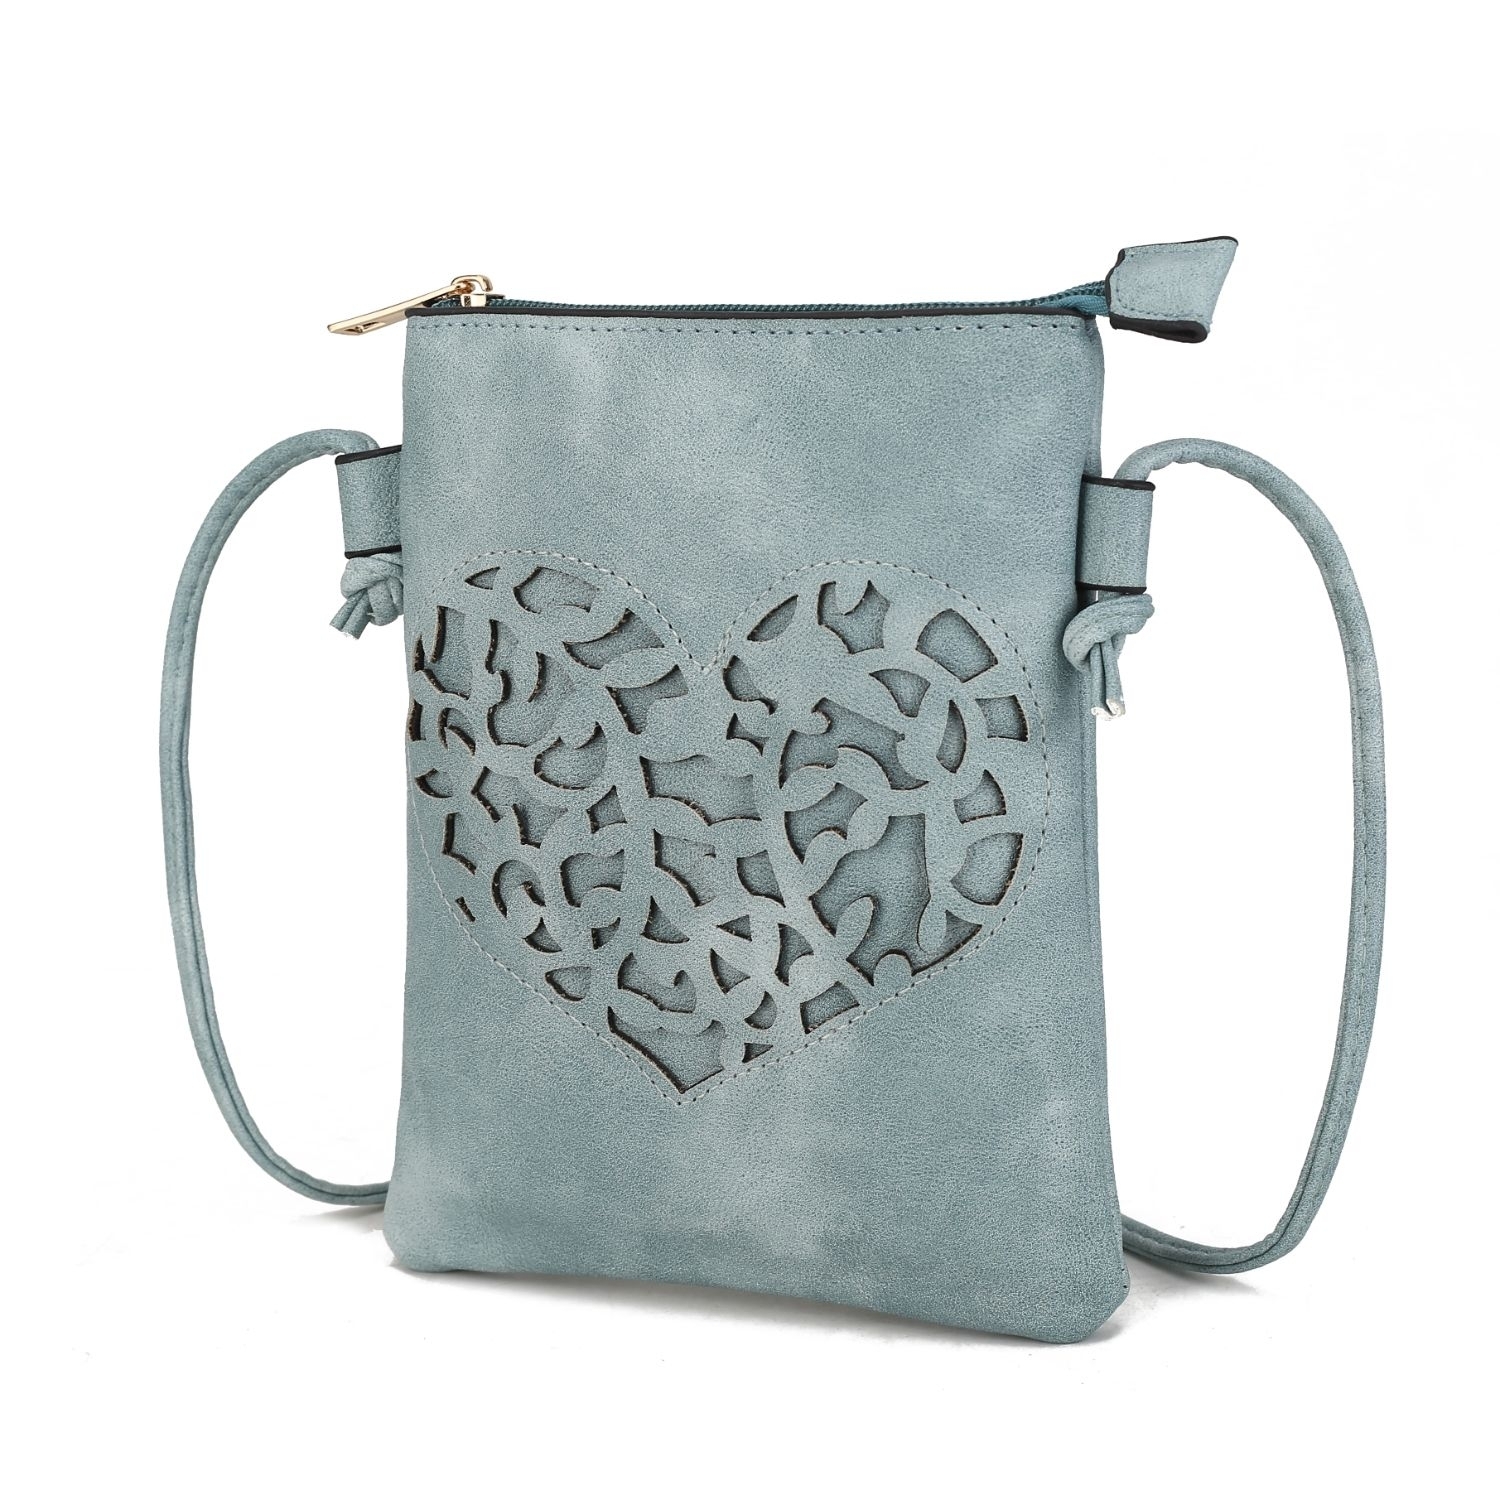 MKF Collection Heartly Crossbody Handbag By Mia K. - Blue